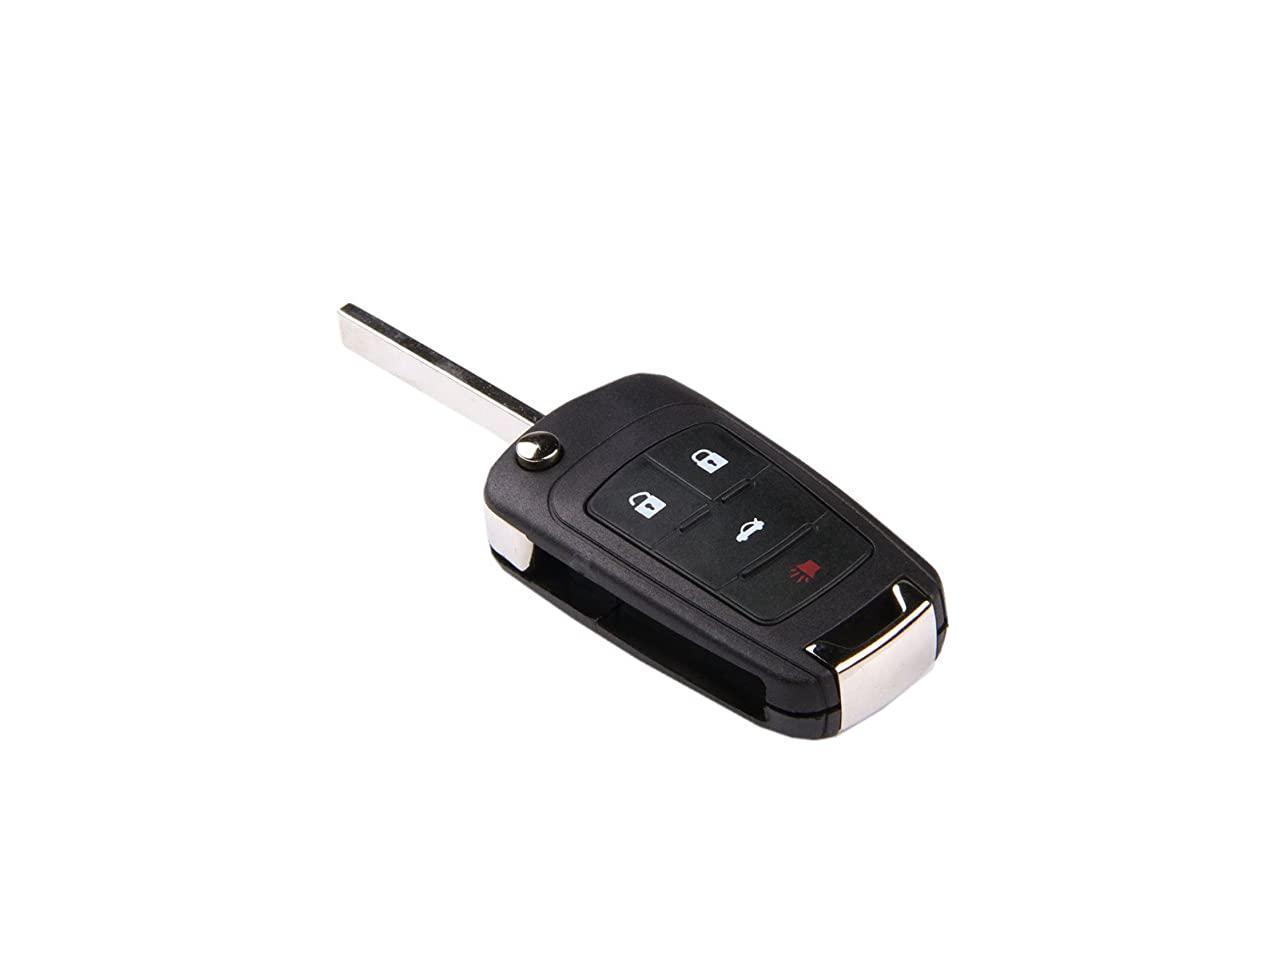 Uncut Flip Key Remote Start Keyless Entry Transmitter For Chevy 2012-2014 Malibu 